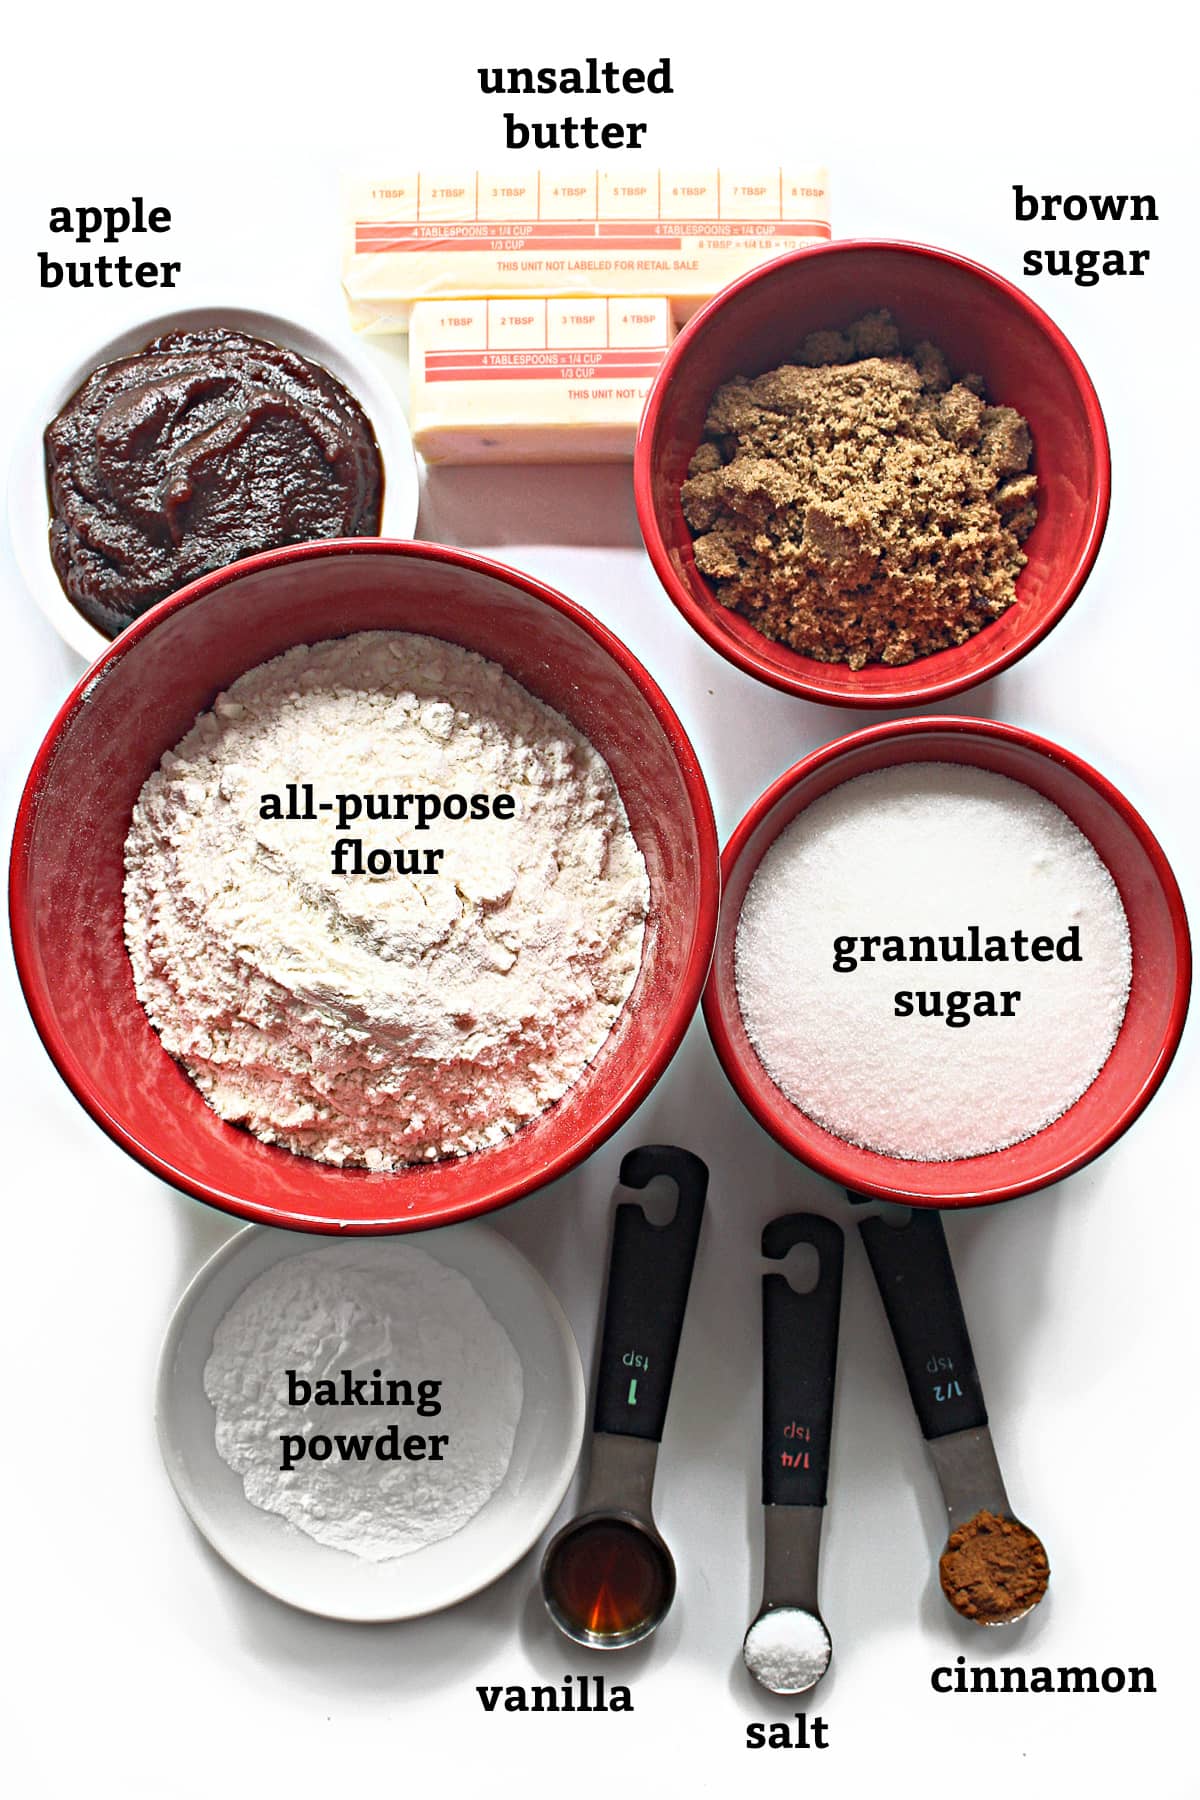 Ingredients labeled: apple butter, butter, brown sugar, white sugar, flour, baking powder, vanilla, salt, cinnamon.